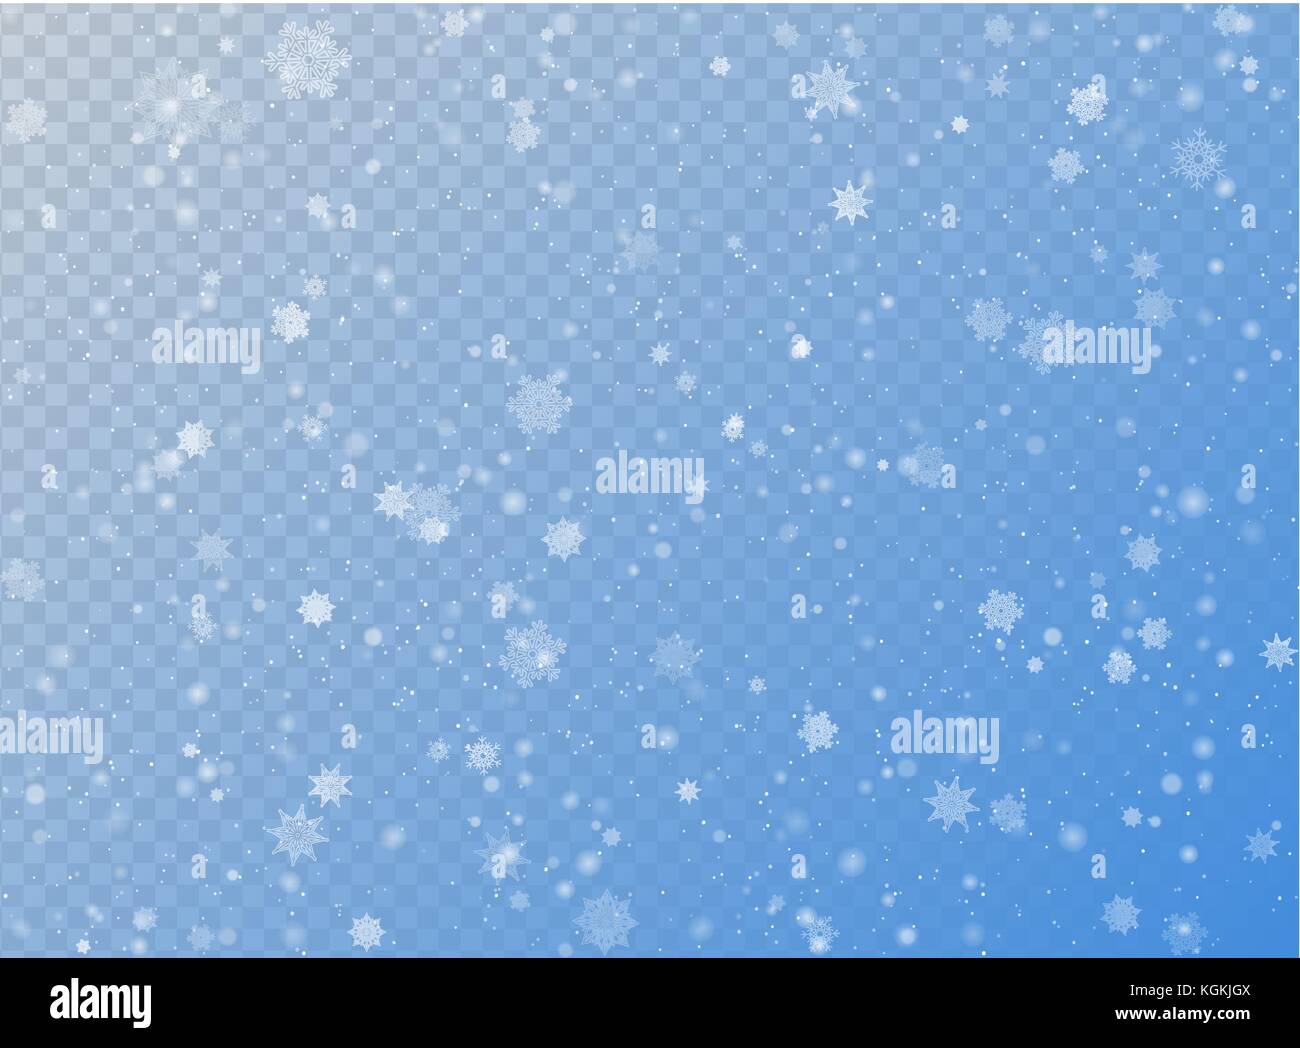 Die nahtlose Vektor weiß Schneefall Effekt auf Blau transparent horizontale Hintergrund. overlay Schneeflocke Weihnachten oder Neujahr winter Wirkung. Elegante snowf Stock Vektor